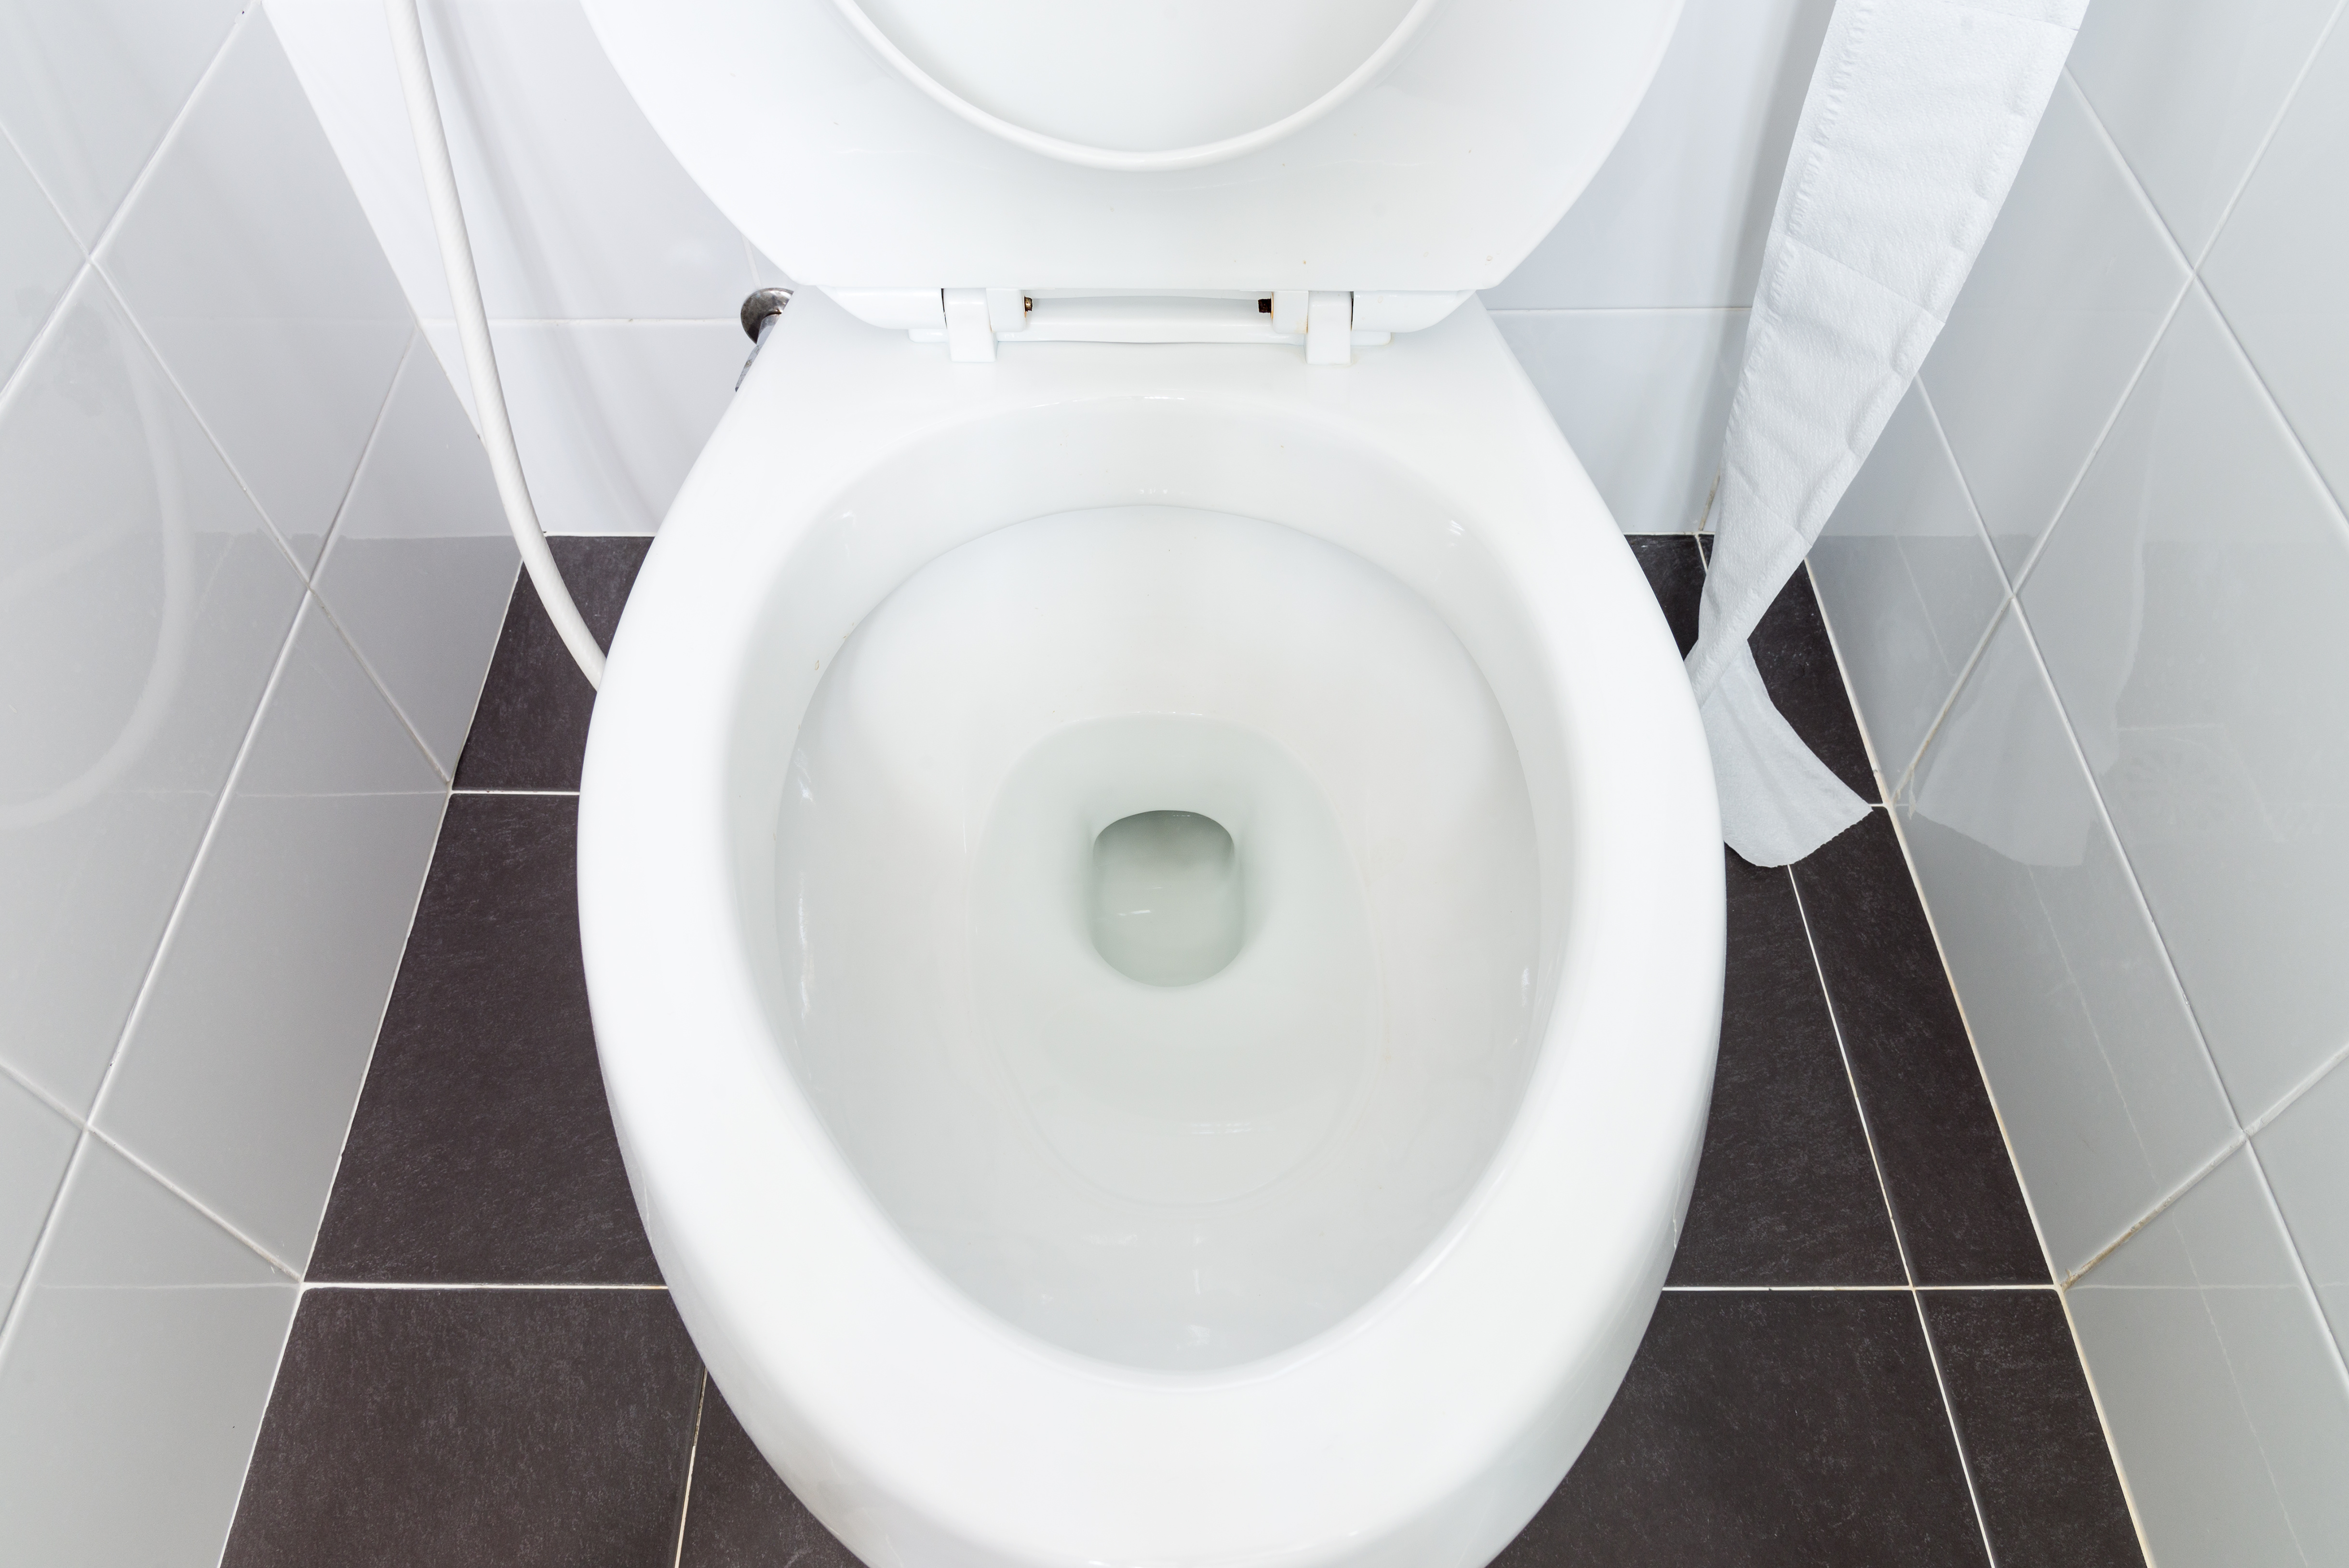 L’eau des toilettes, révélatrice du statut social. © trainman111, Adobe Stock